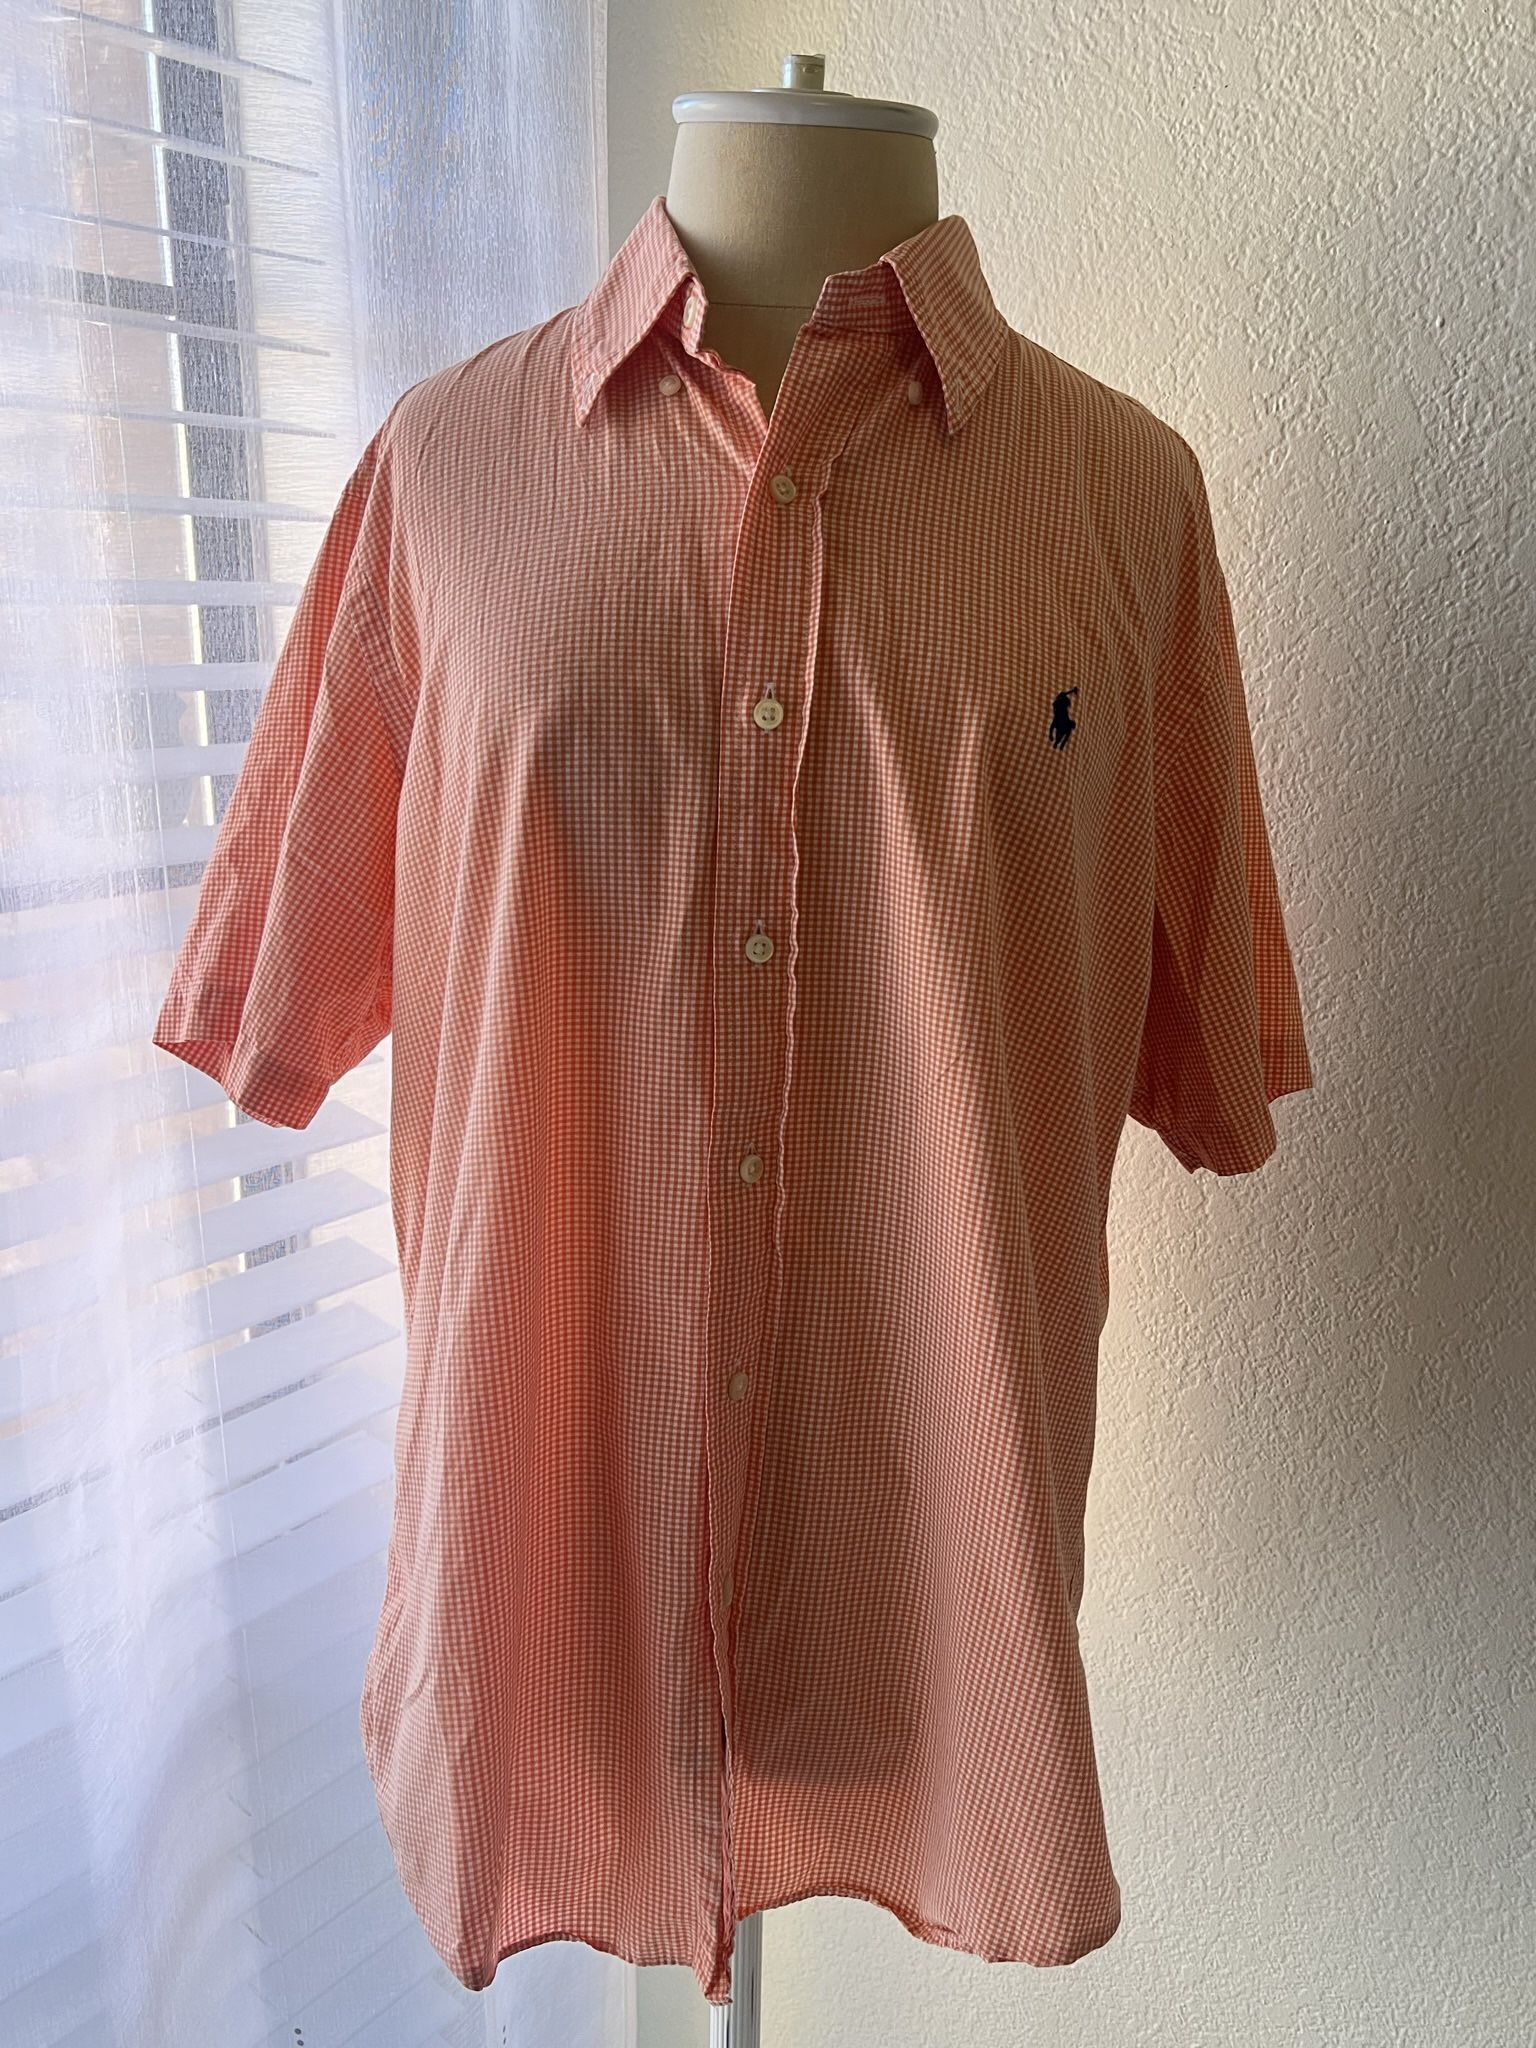 Polo Ralph Lauren short sleeve button down shirt